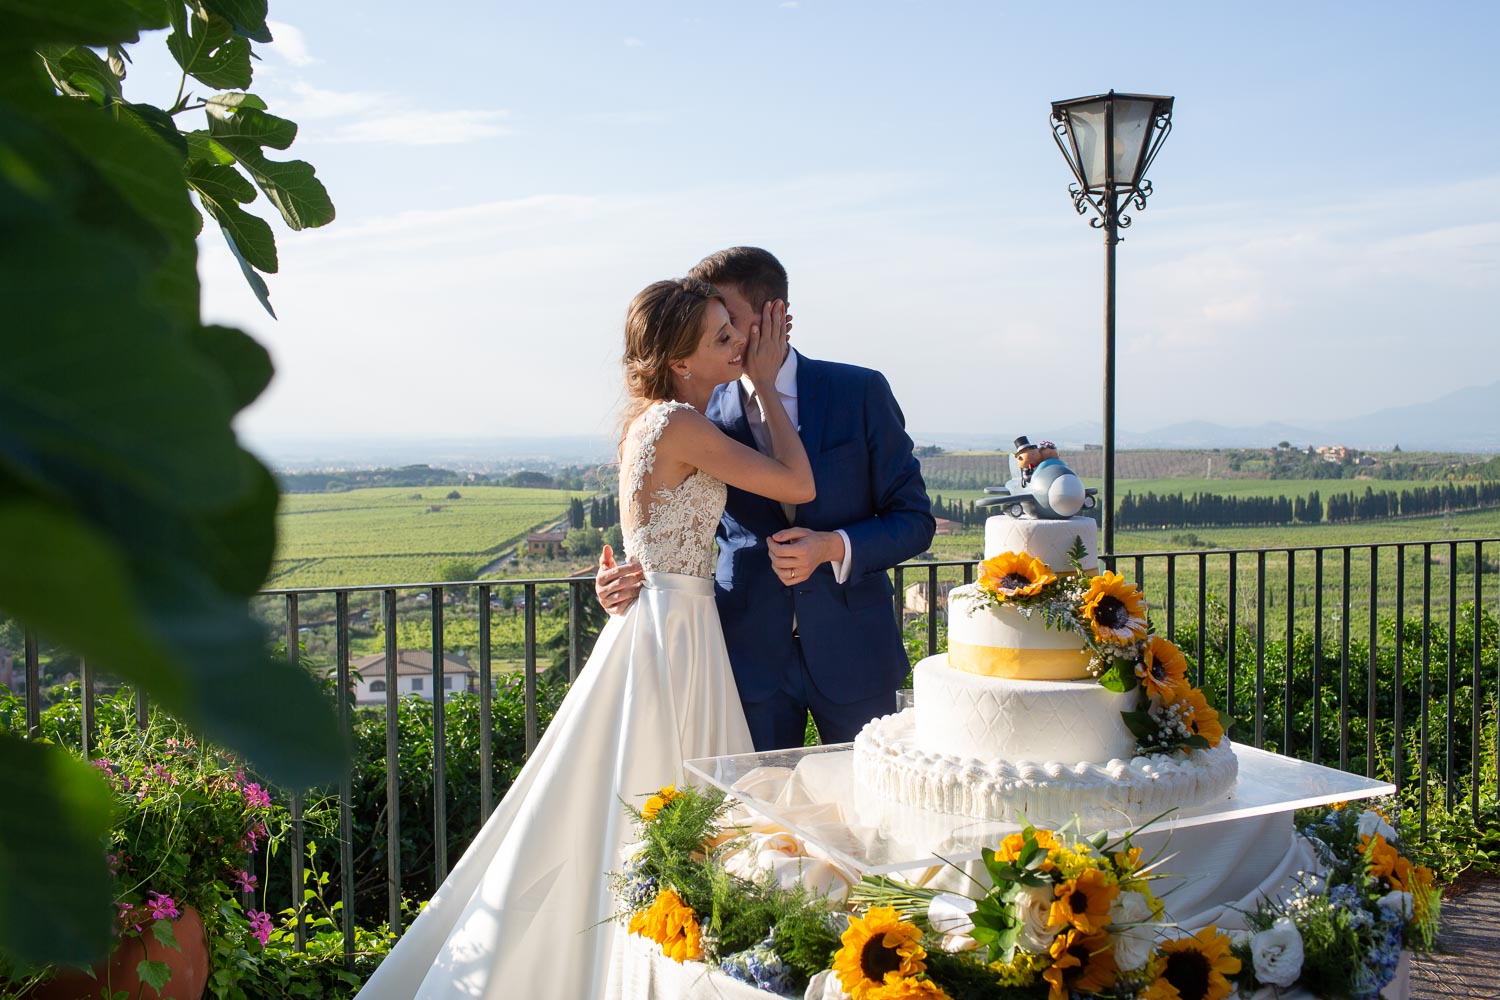 _nf - Fotografo Matrimonio Roma - Taglio della torta